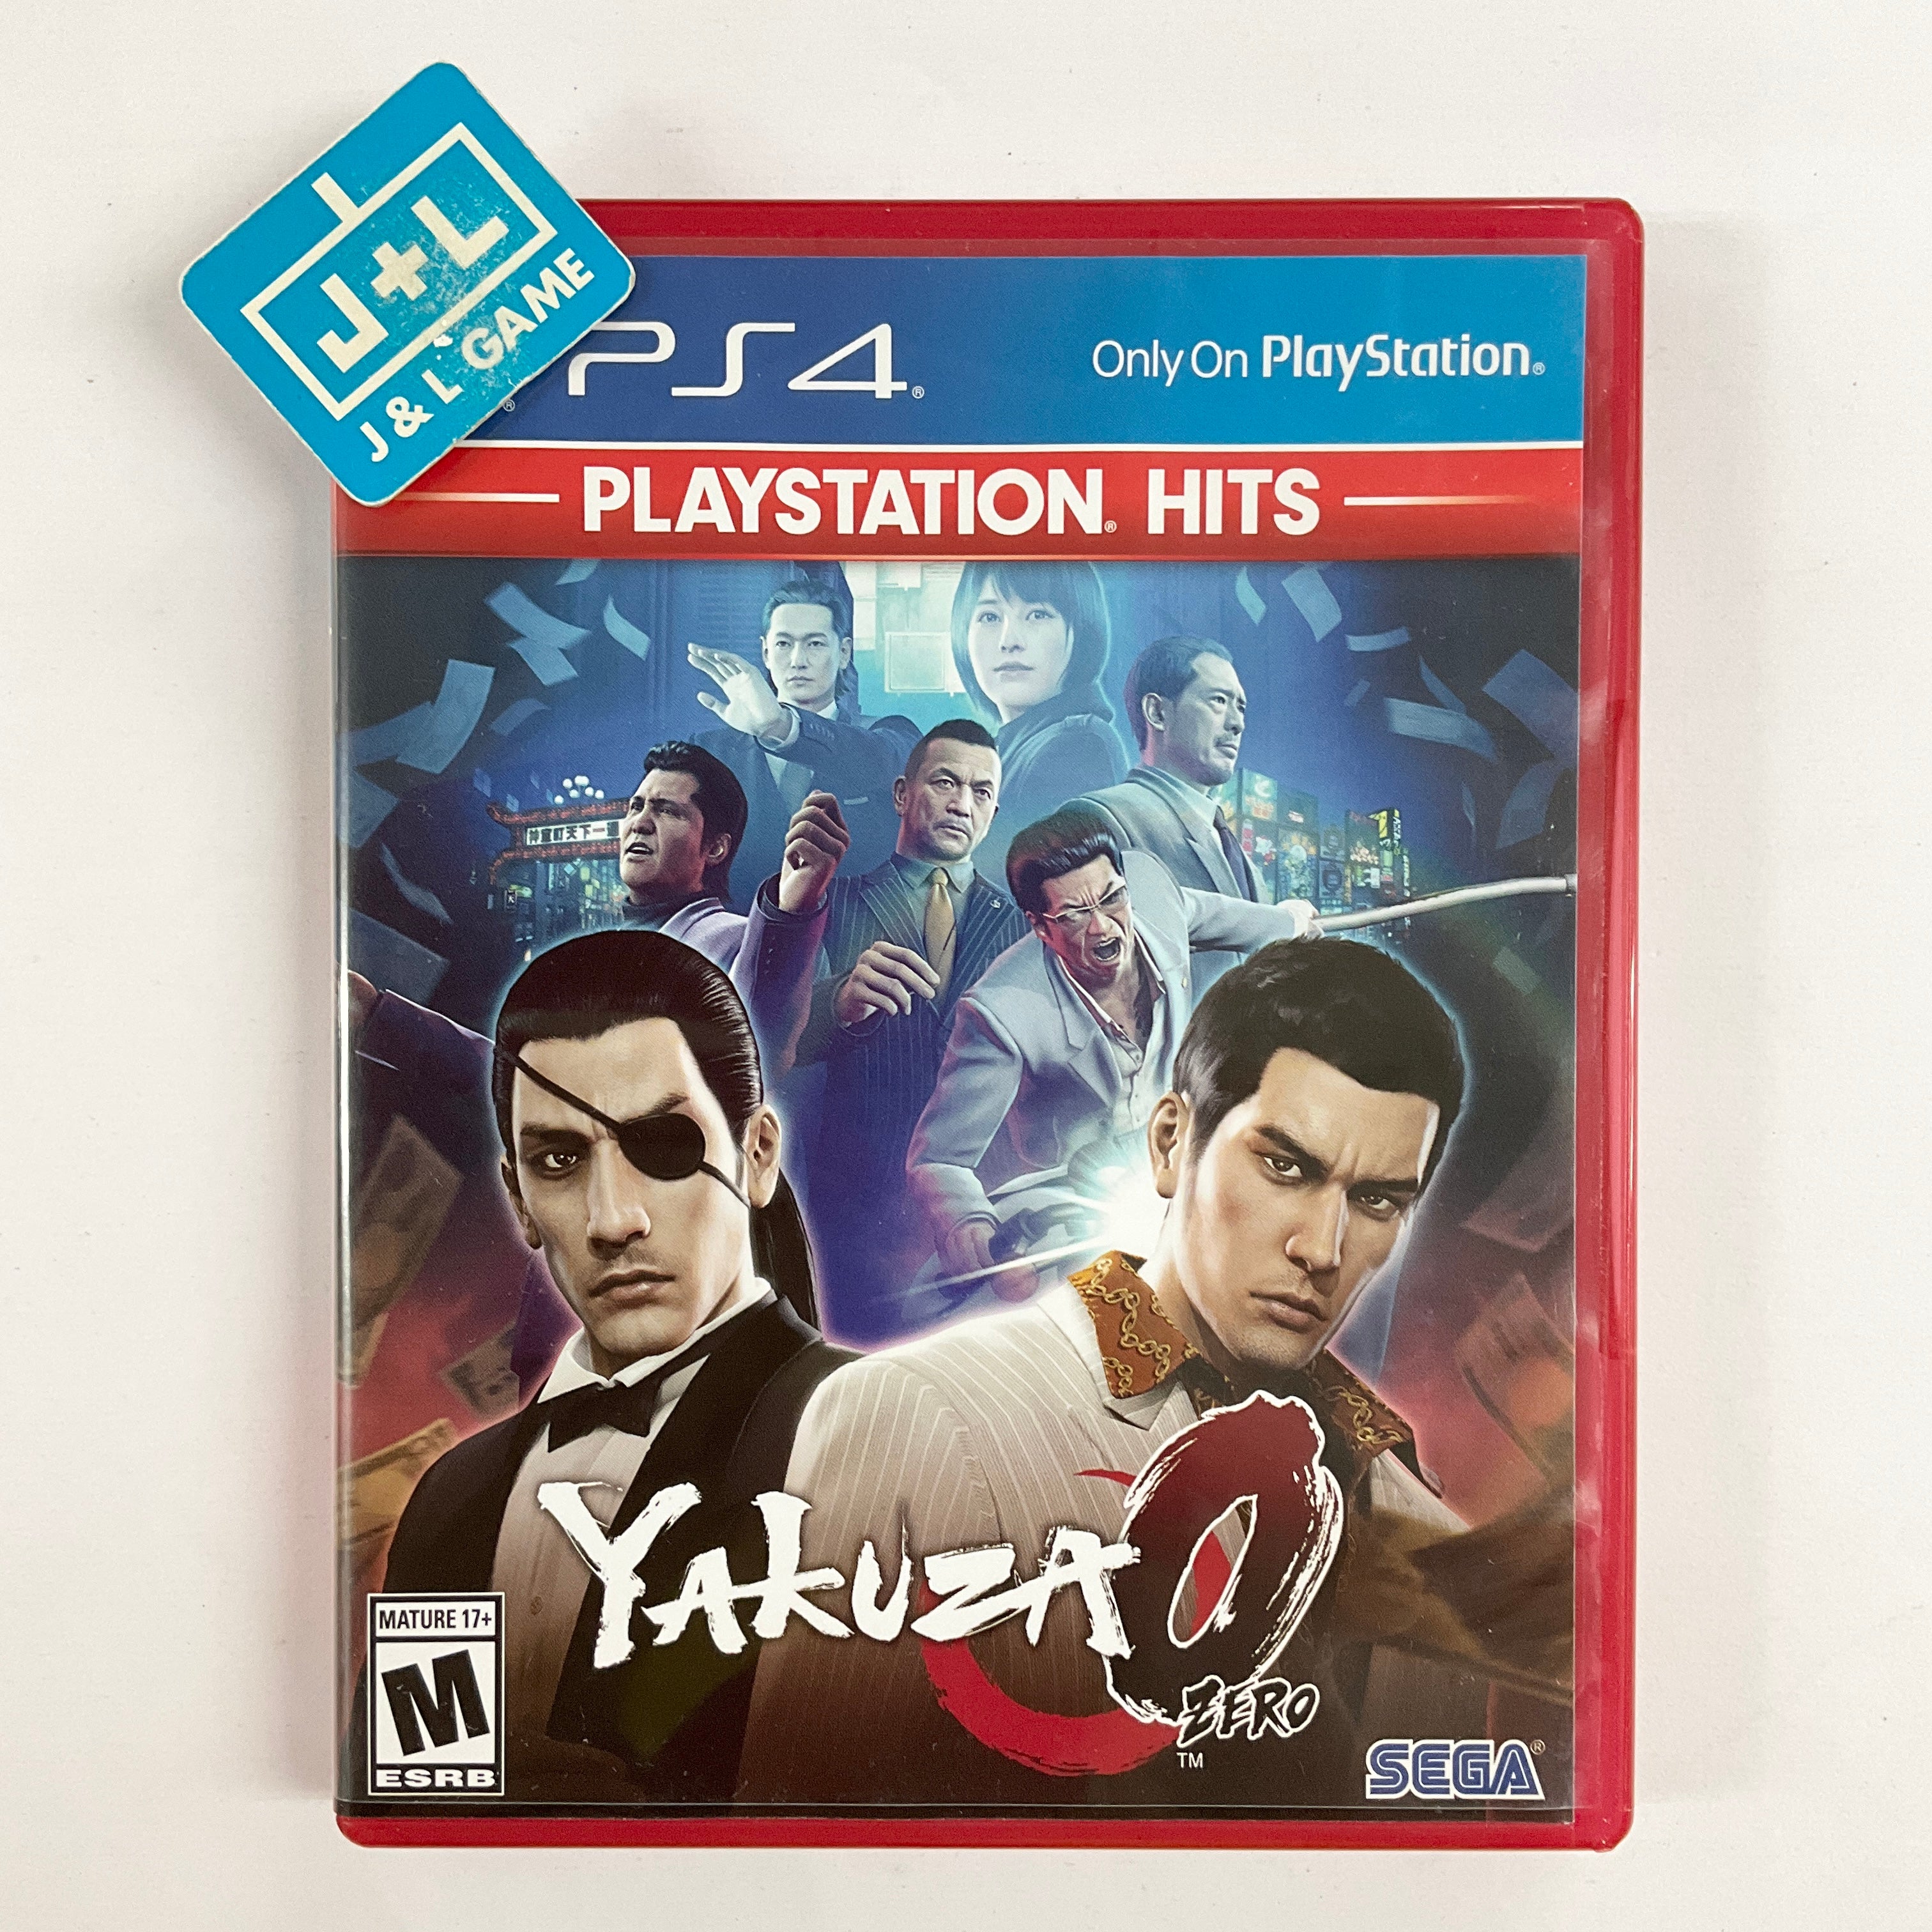 Yakuza 0 (PlayStation Hits) - (PS4) PlayStation 4 [Pre-Owned] Video Games Sega   